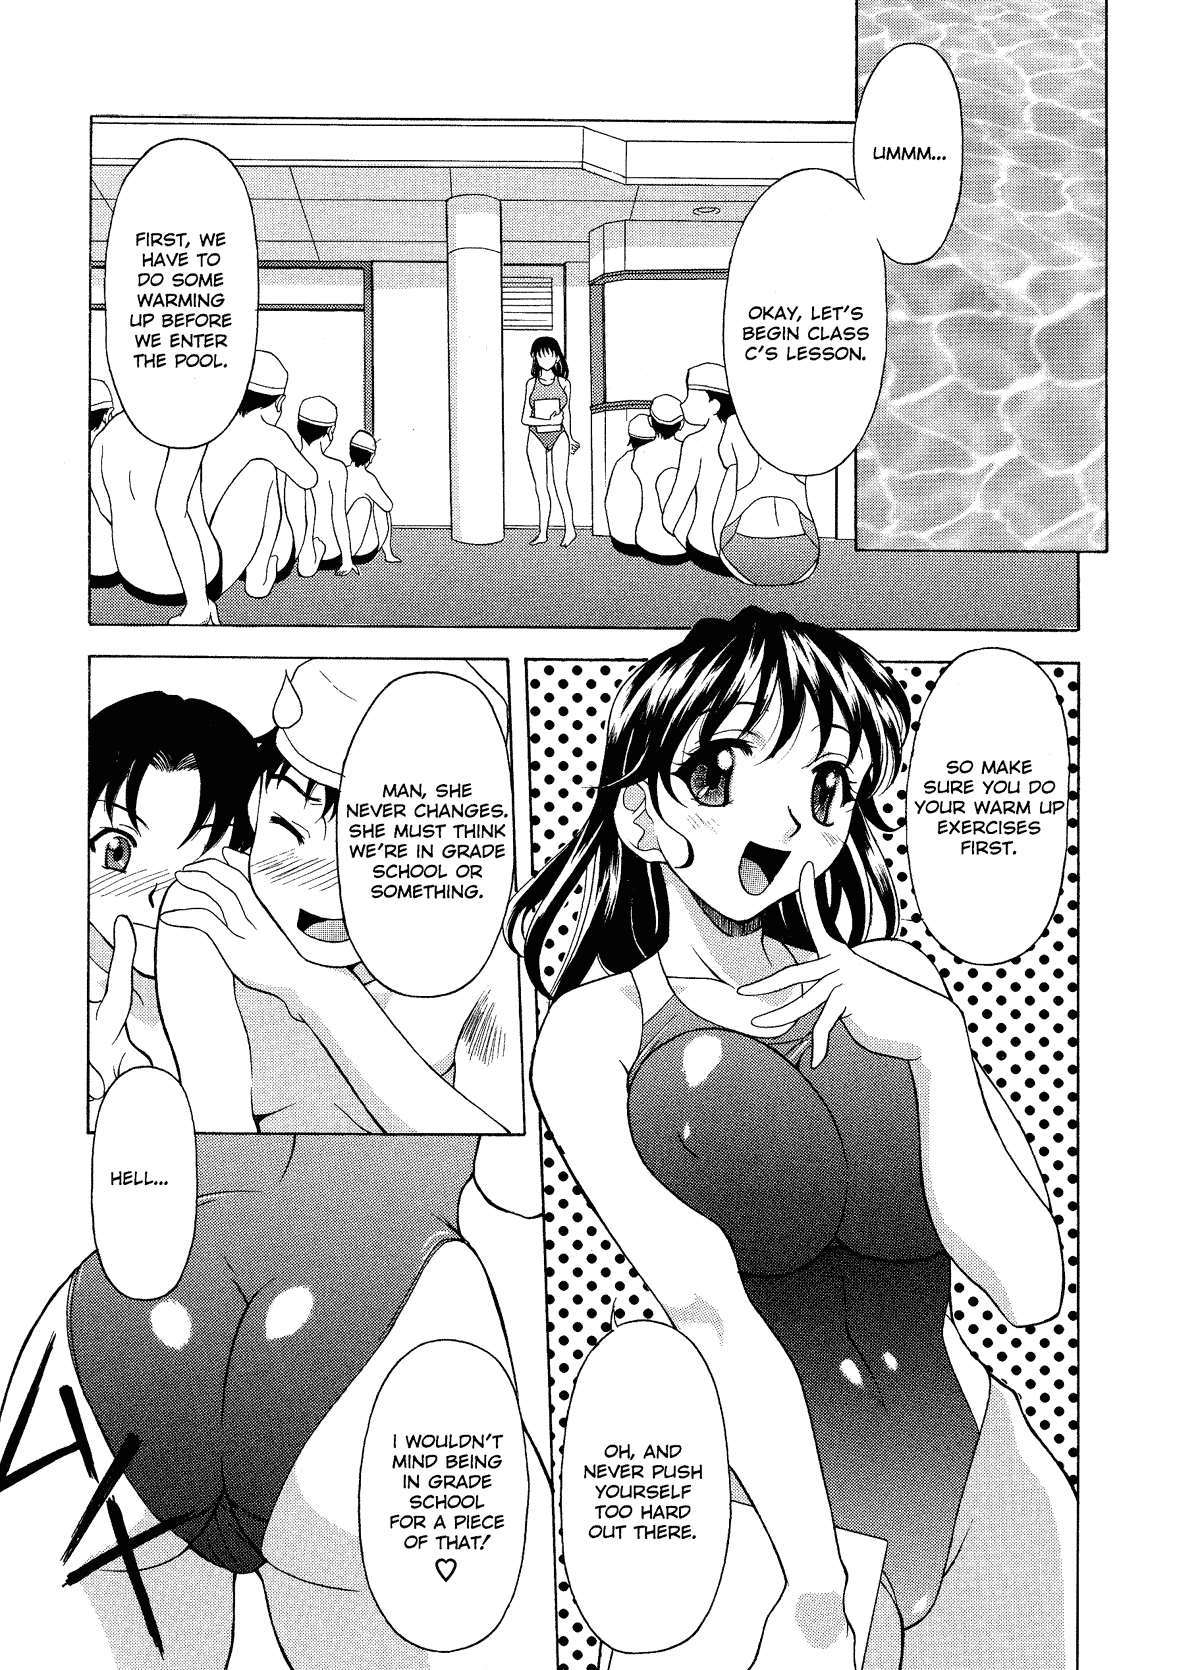 The Water Ritual 2 hentai manga